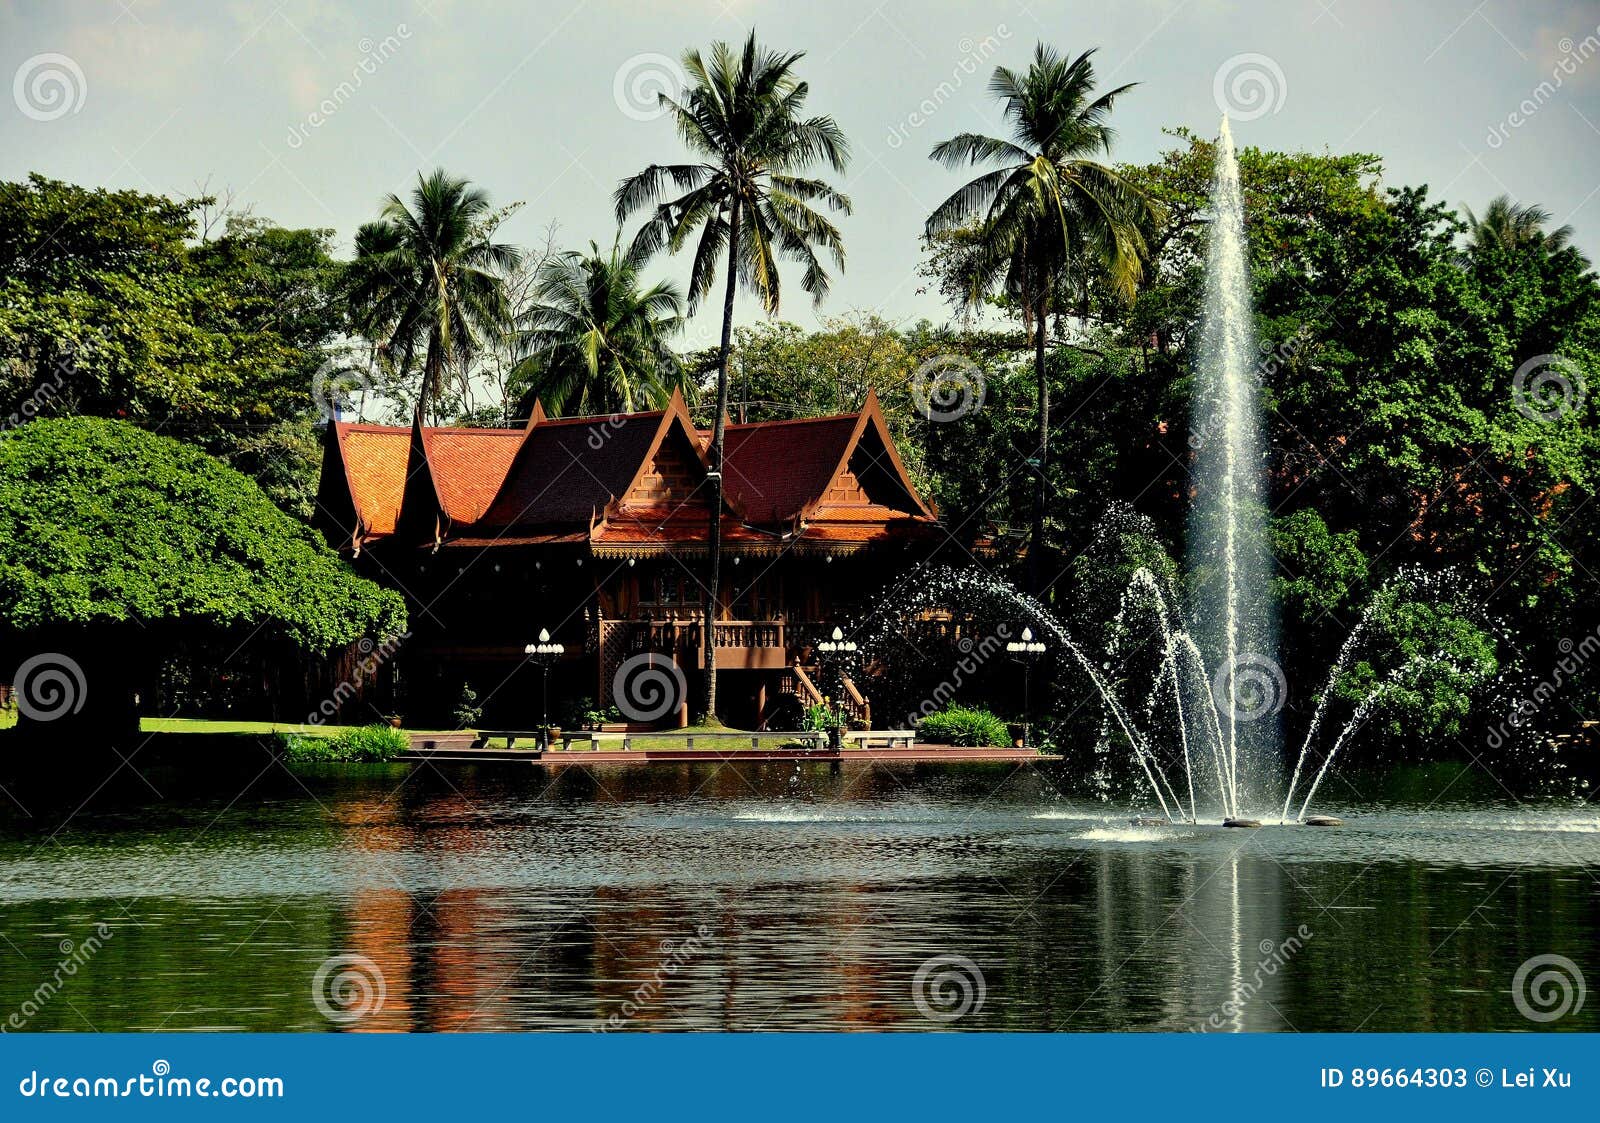 Sampan Thailand Riverside Garden And Park Editorial Stock Photo